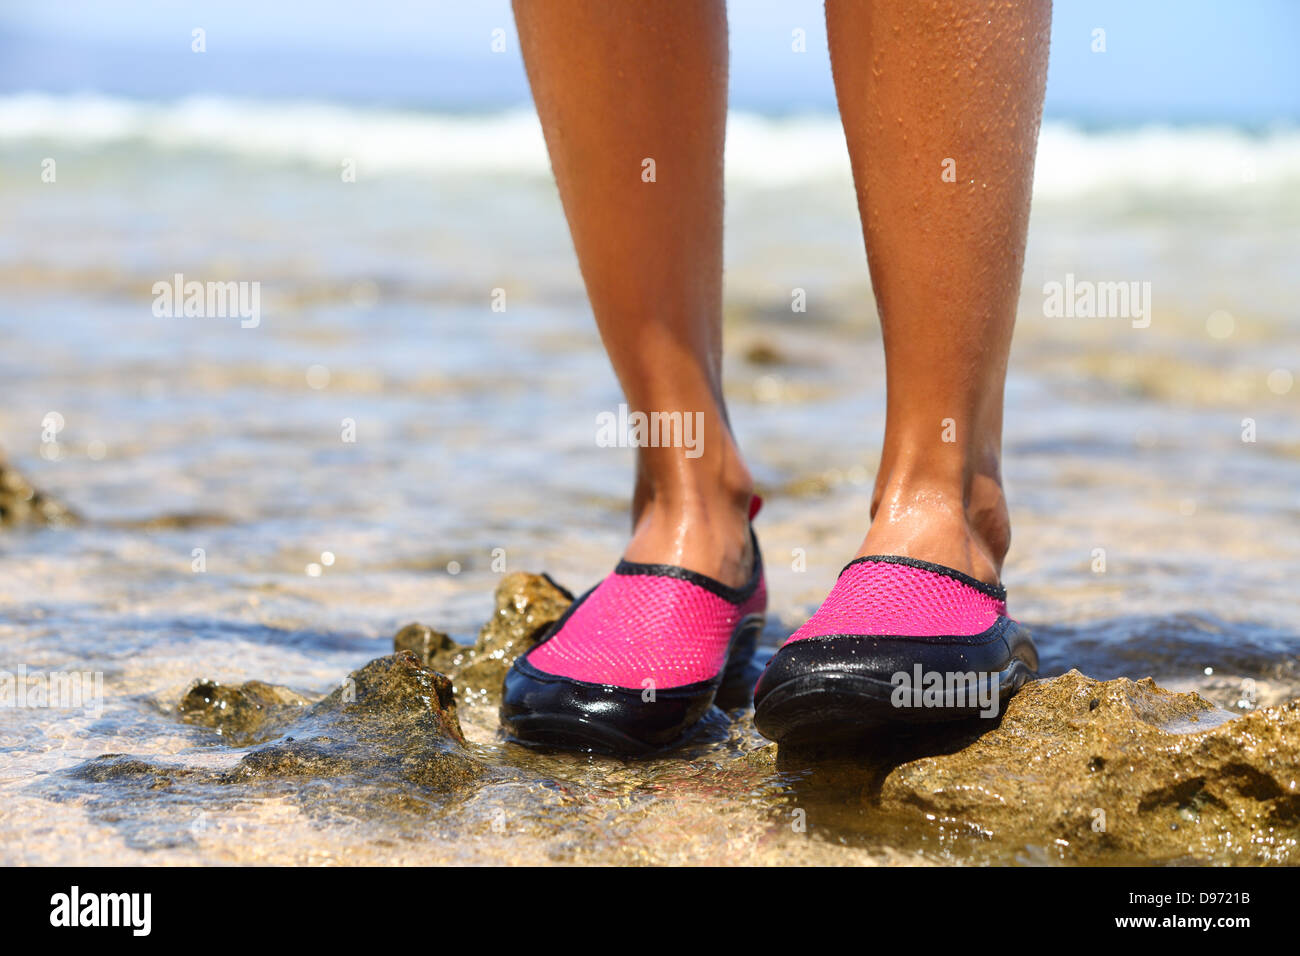 Chaussures d'eau / baignade chaussure en néoprène rose sur les rochers dans  l'eau sur la plage. Closeup détail des pieds d'une femme portant des  chaussures d'eau en néoprène rose vif Photo Stock -